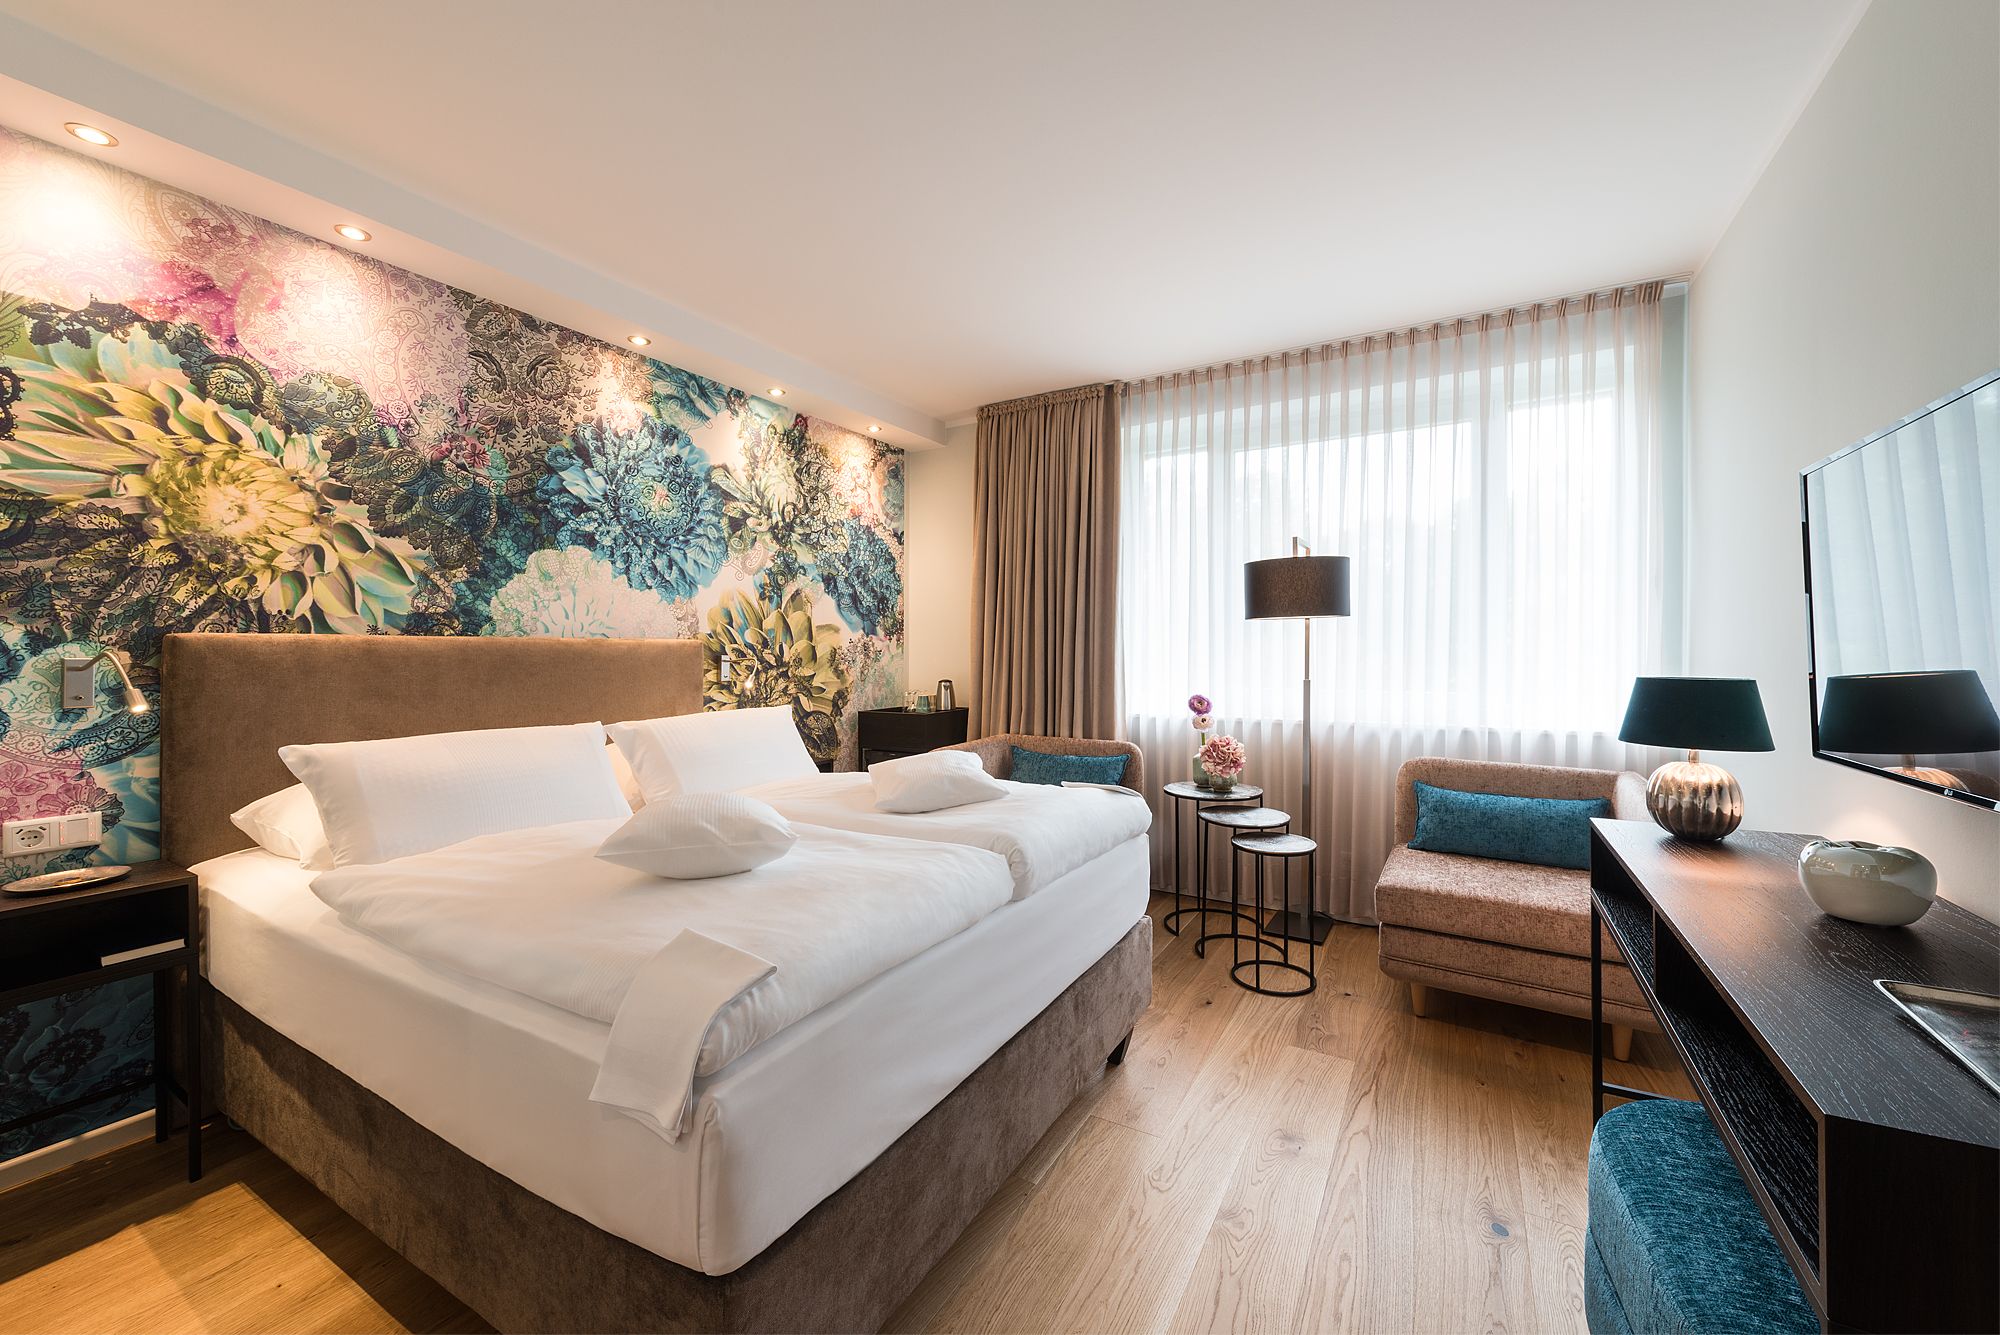 Zimmer der Kategorie Auszeit mit bunter Tapete - Hotel Munte Bremen